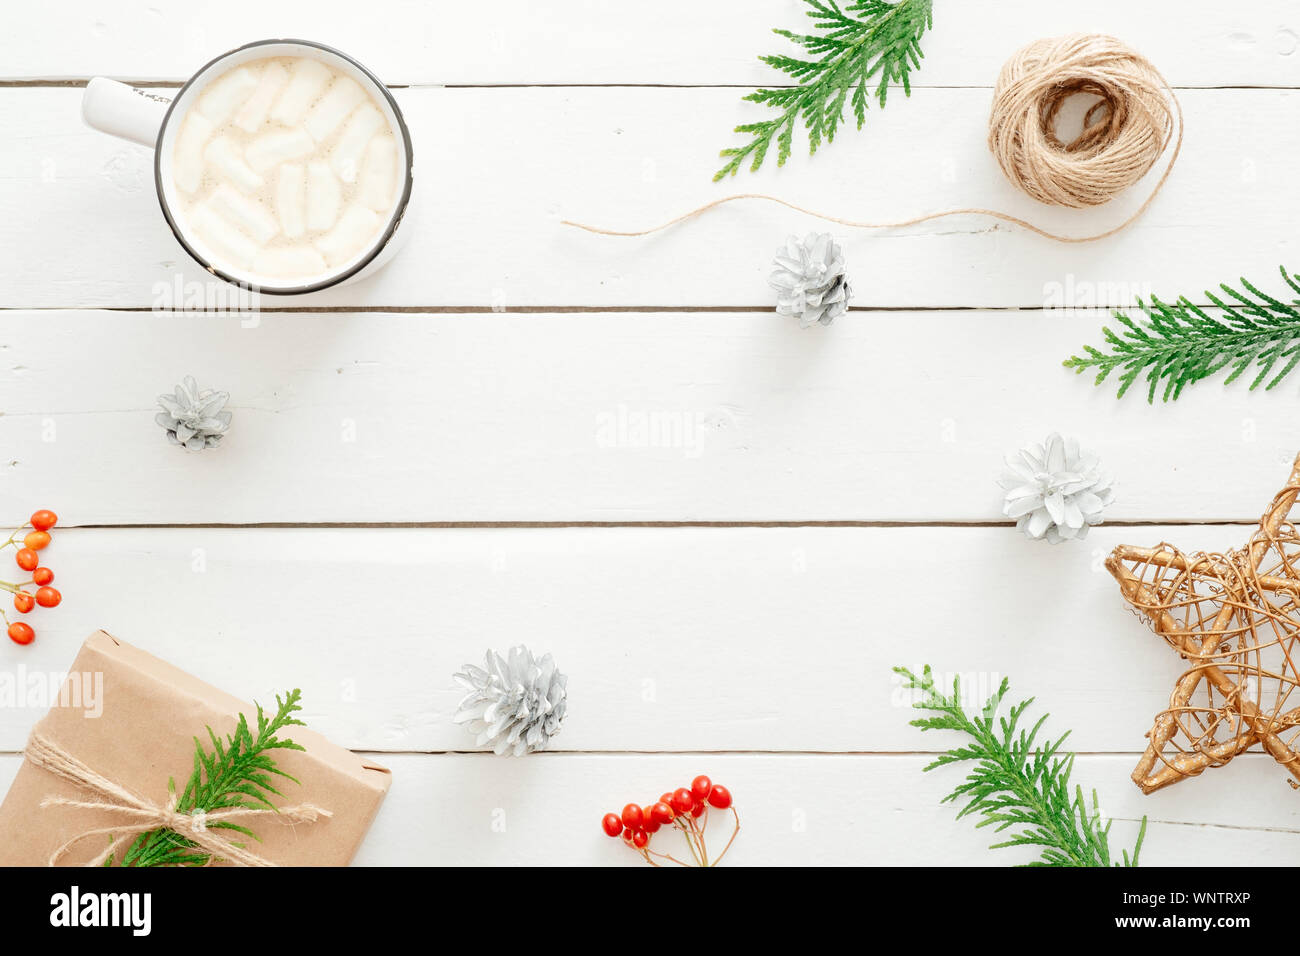 Natale flatlay composizione. Cioccolata calda con marshmallows cup, Abete rami, confezione regalo di natale decorazione in legno rustico backgroun bianco Foto Stock